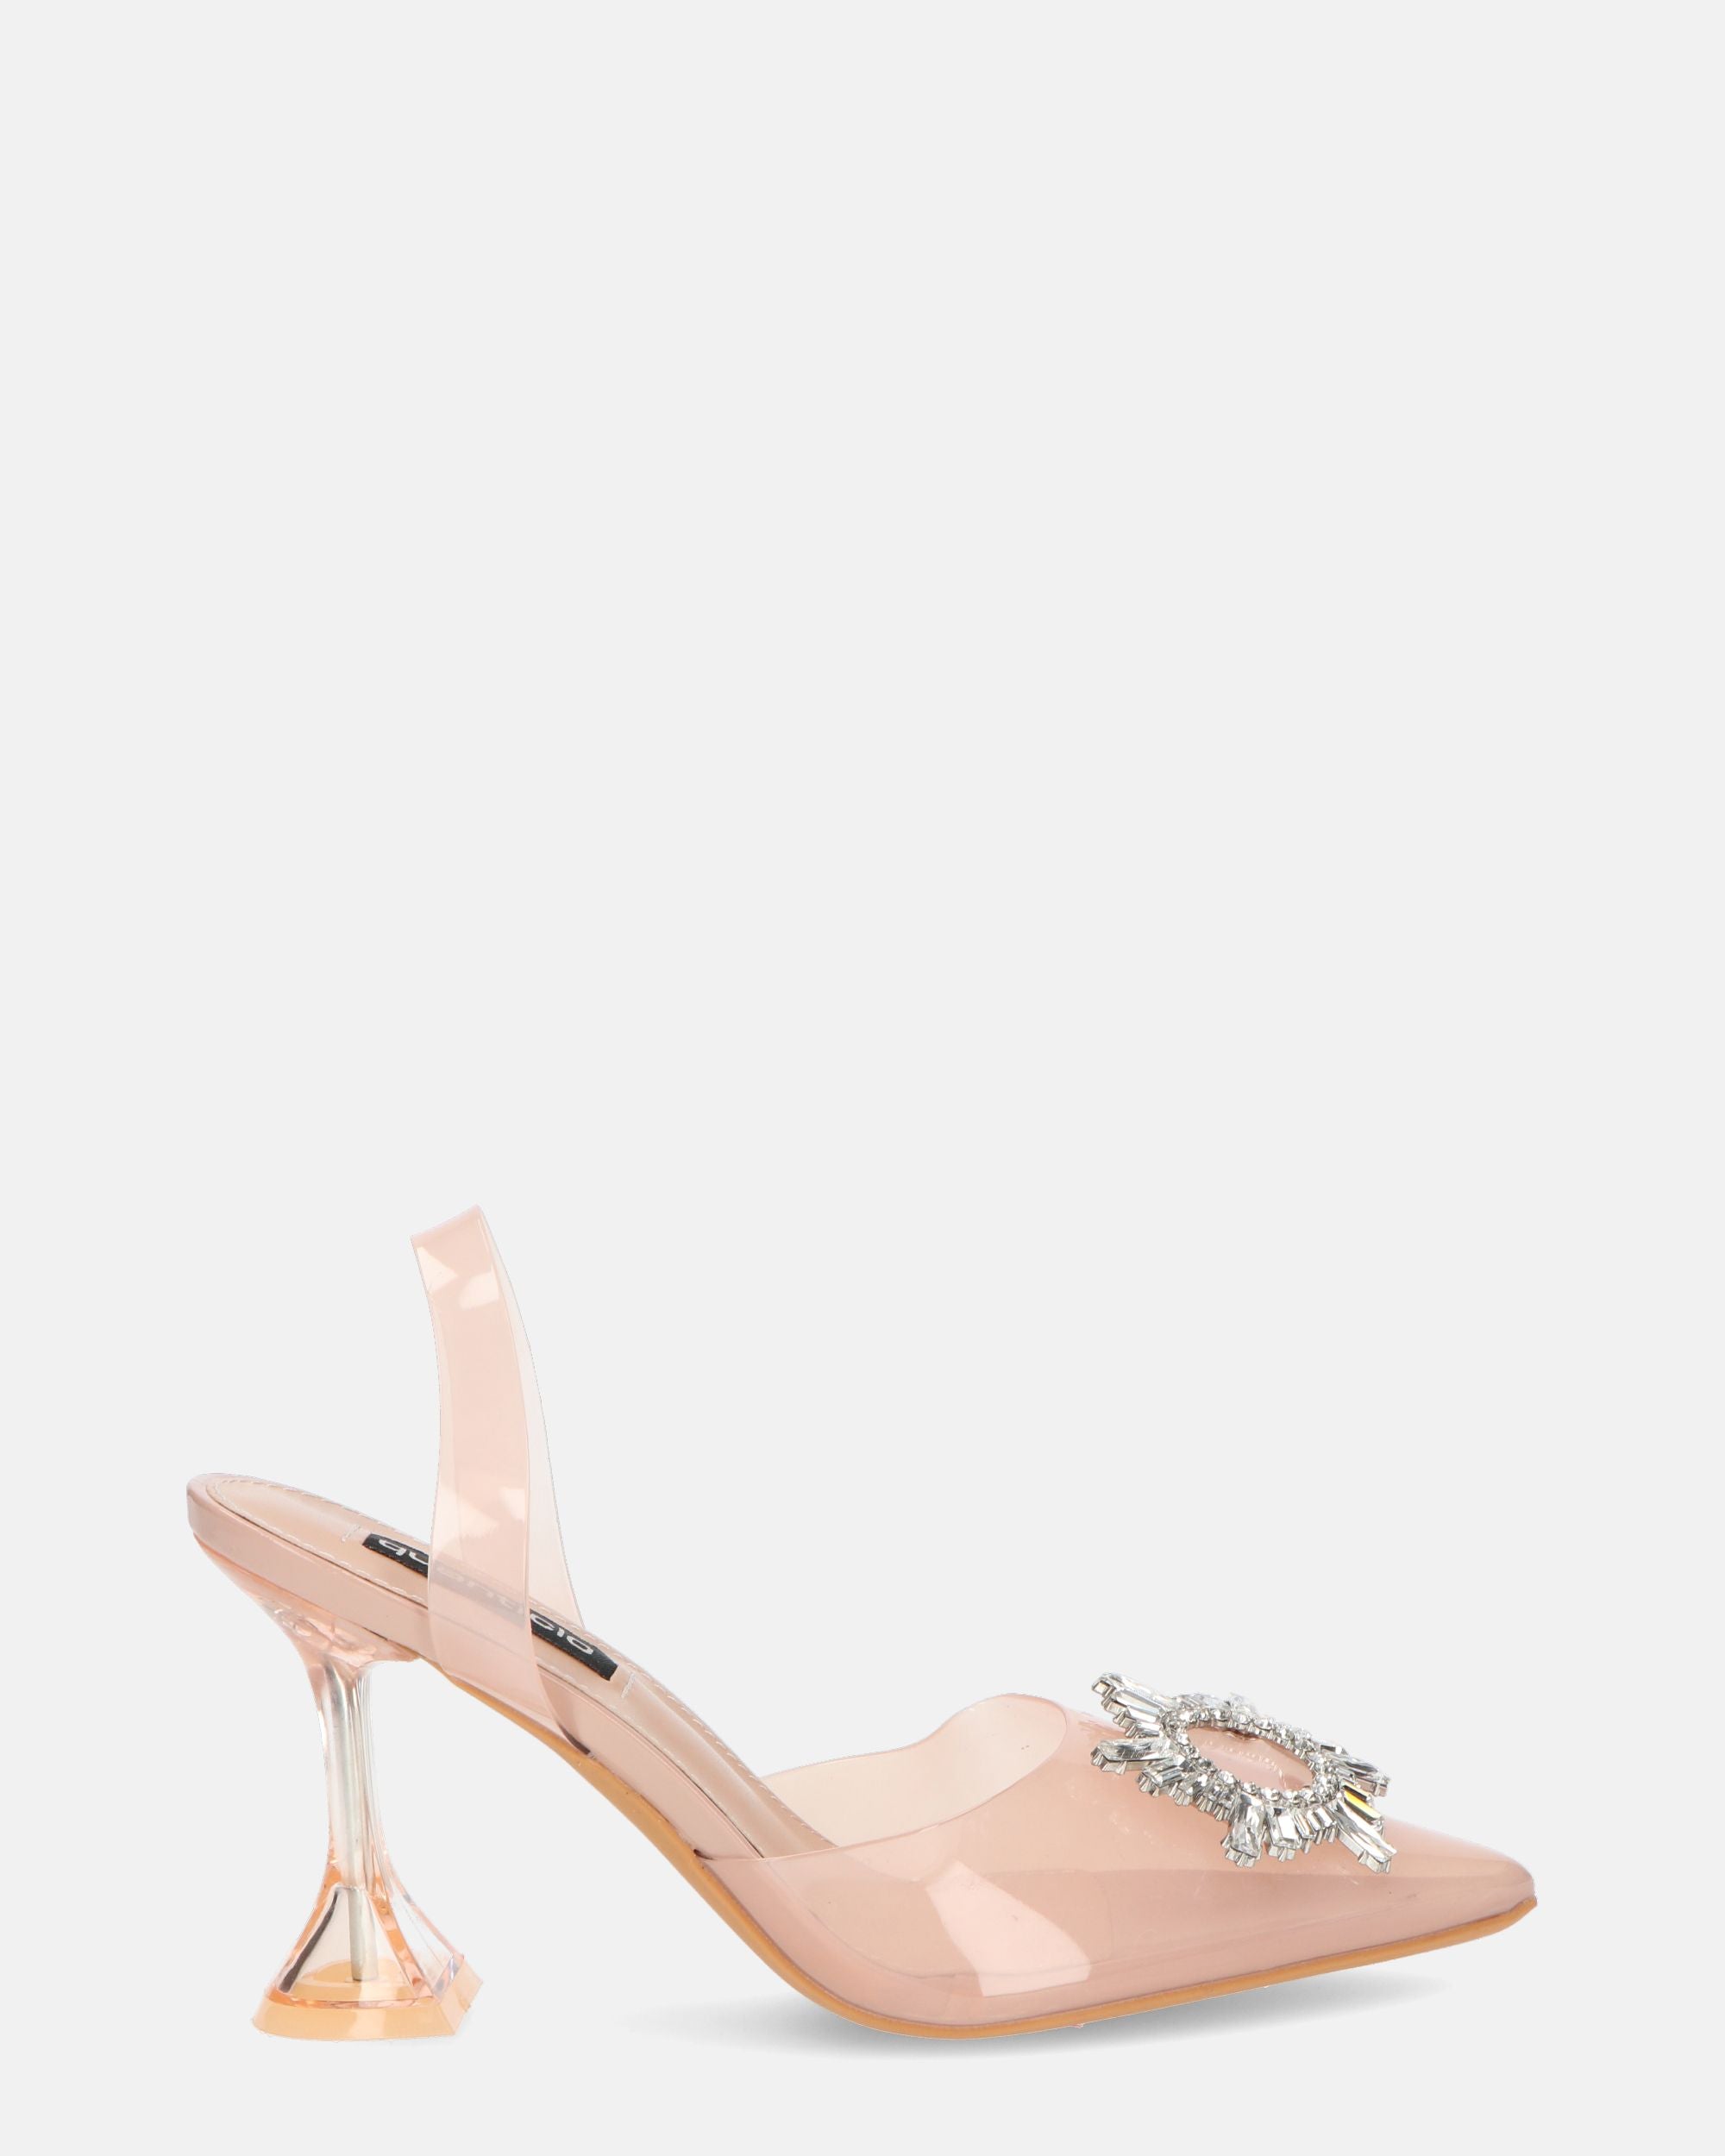 KENAN - scarpe in perspex rosa con decorazione di gemme in punta